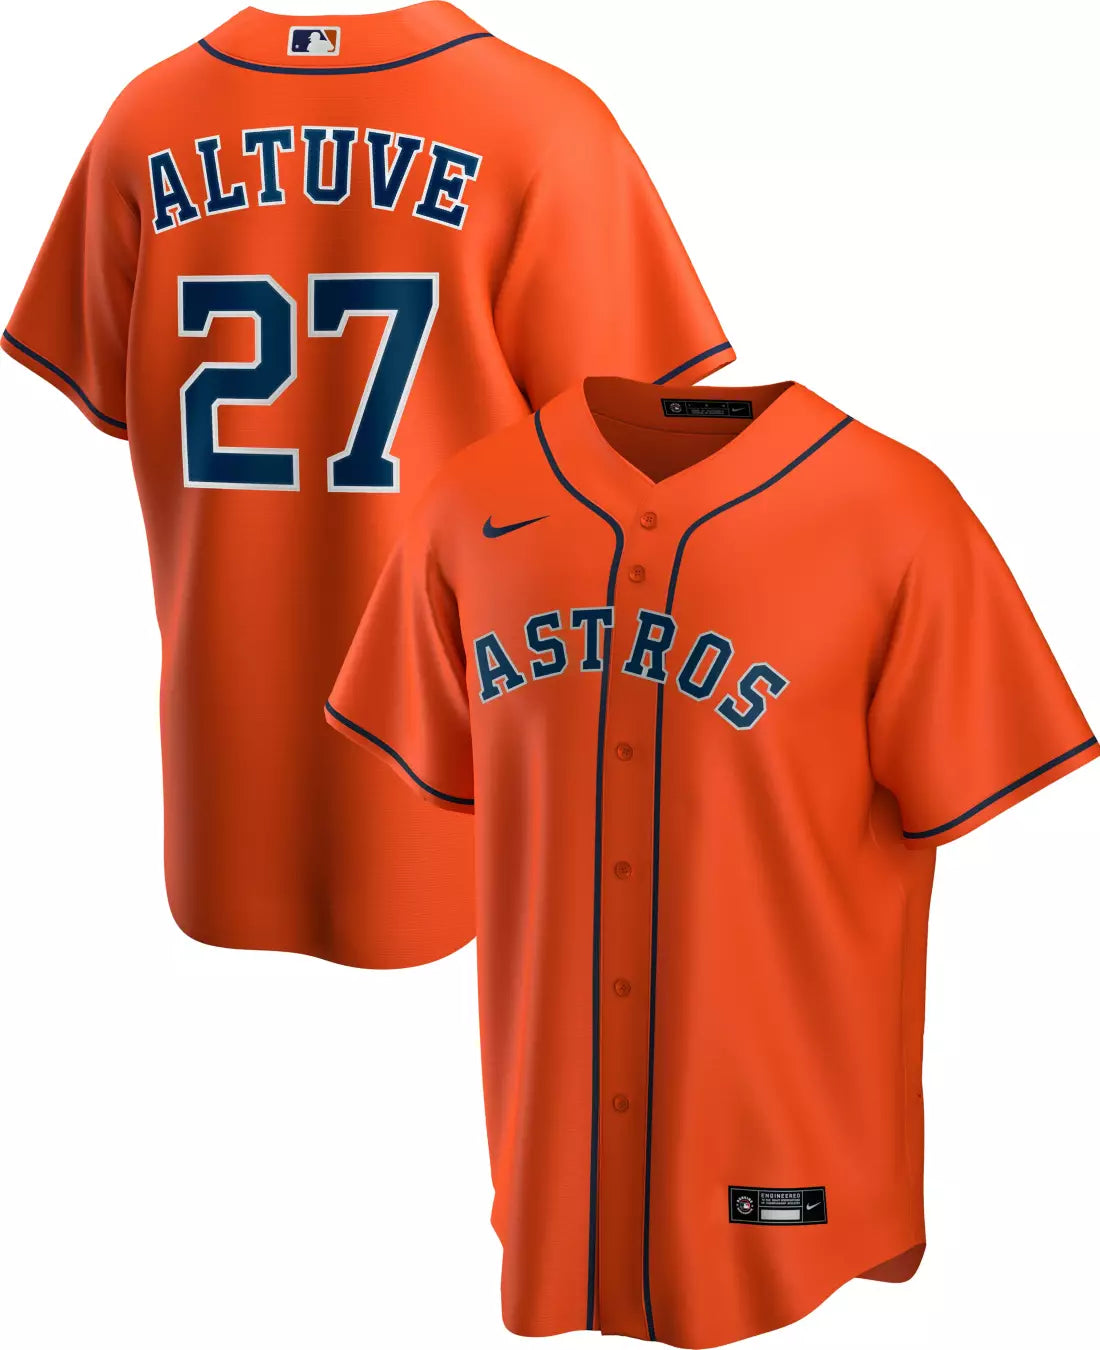 Official Jose Altuve Jersey, Jose Altuve Shirts, Baseball Apparel